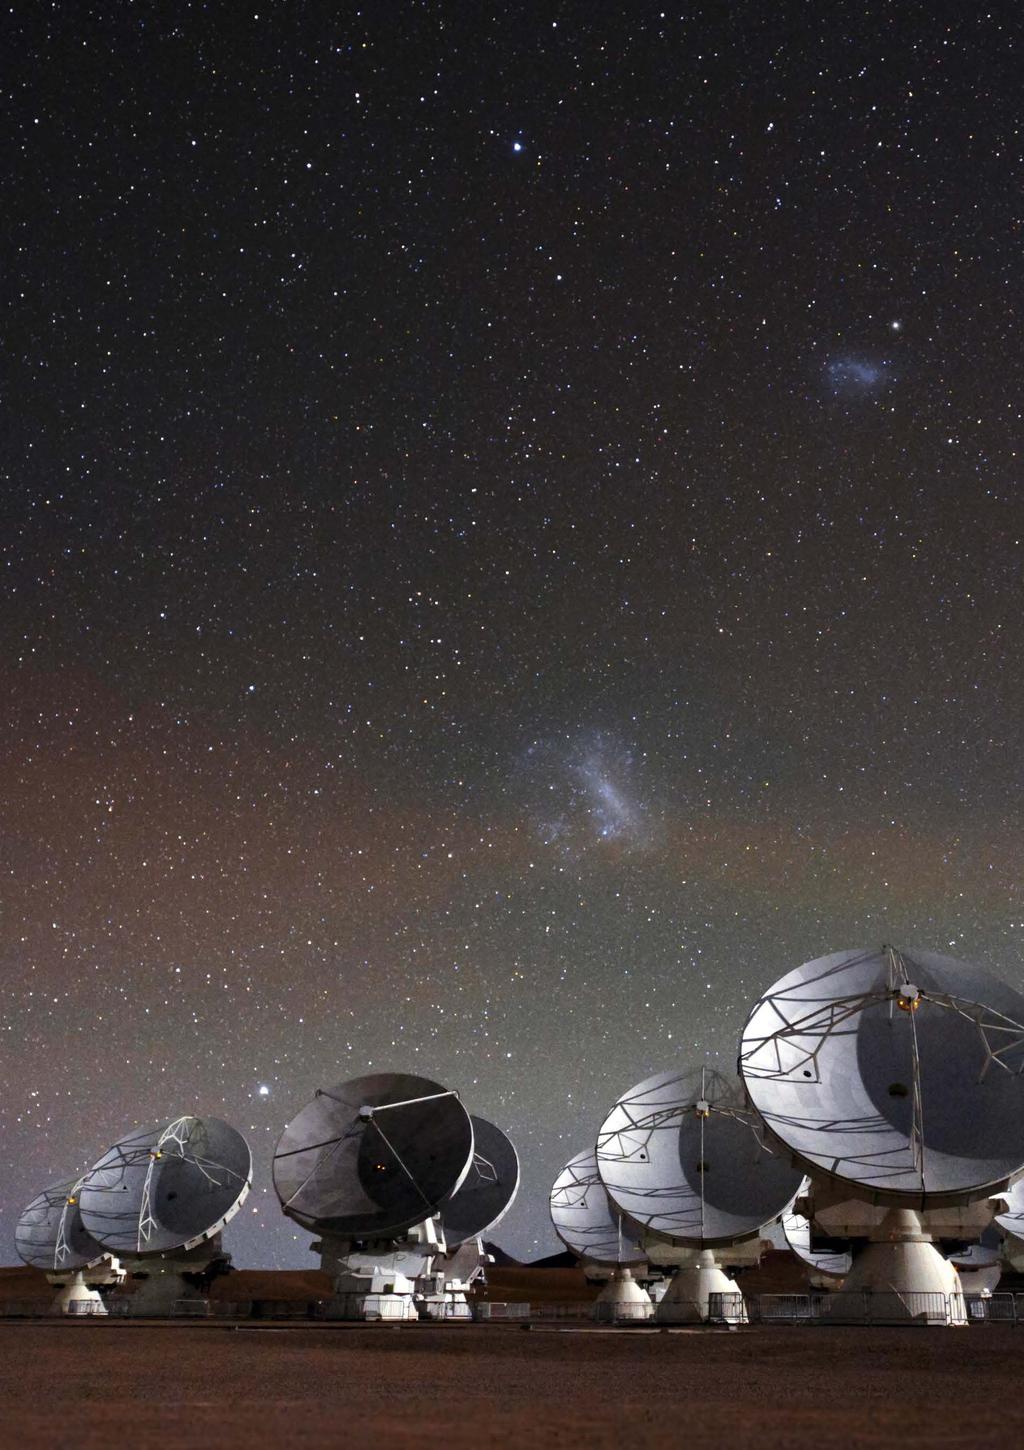 Obserwatorium astronomiczne ALMA (Atacama Large Millimeter/submillimeter Array) to największy na świecie zespół radioteleskopów zlokalizowany na wysokości ok. 5000 m n.p.m. w Andach.